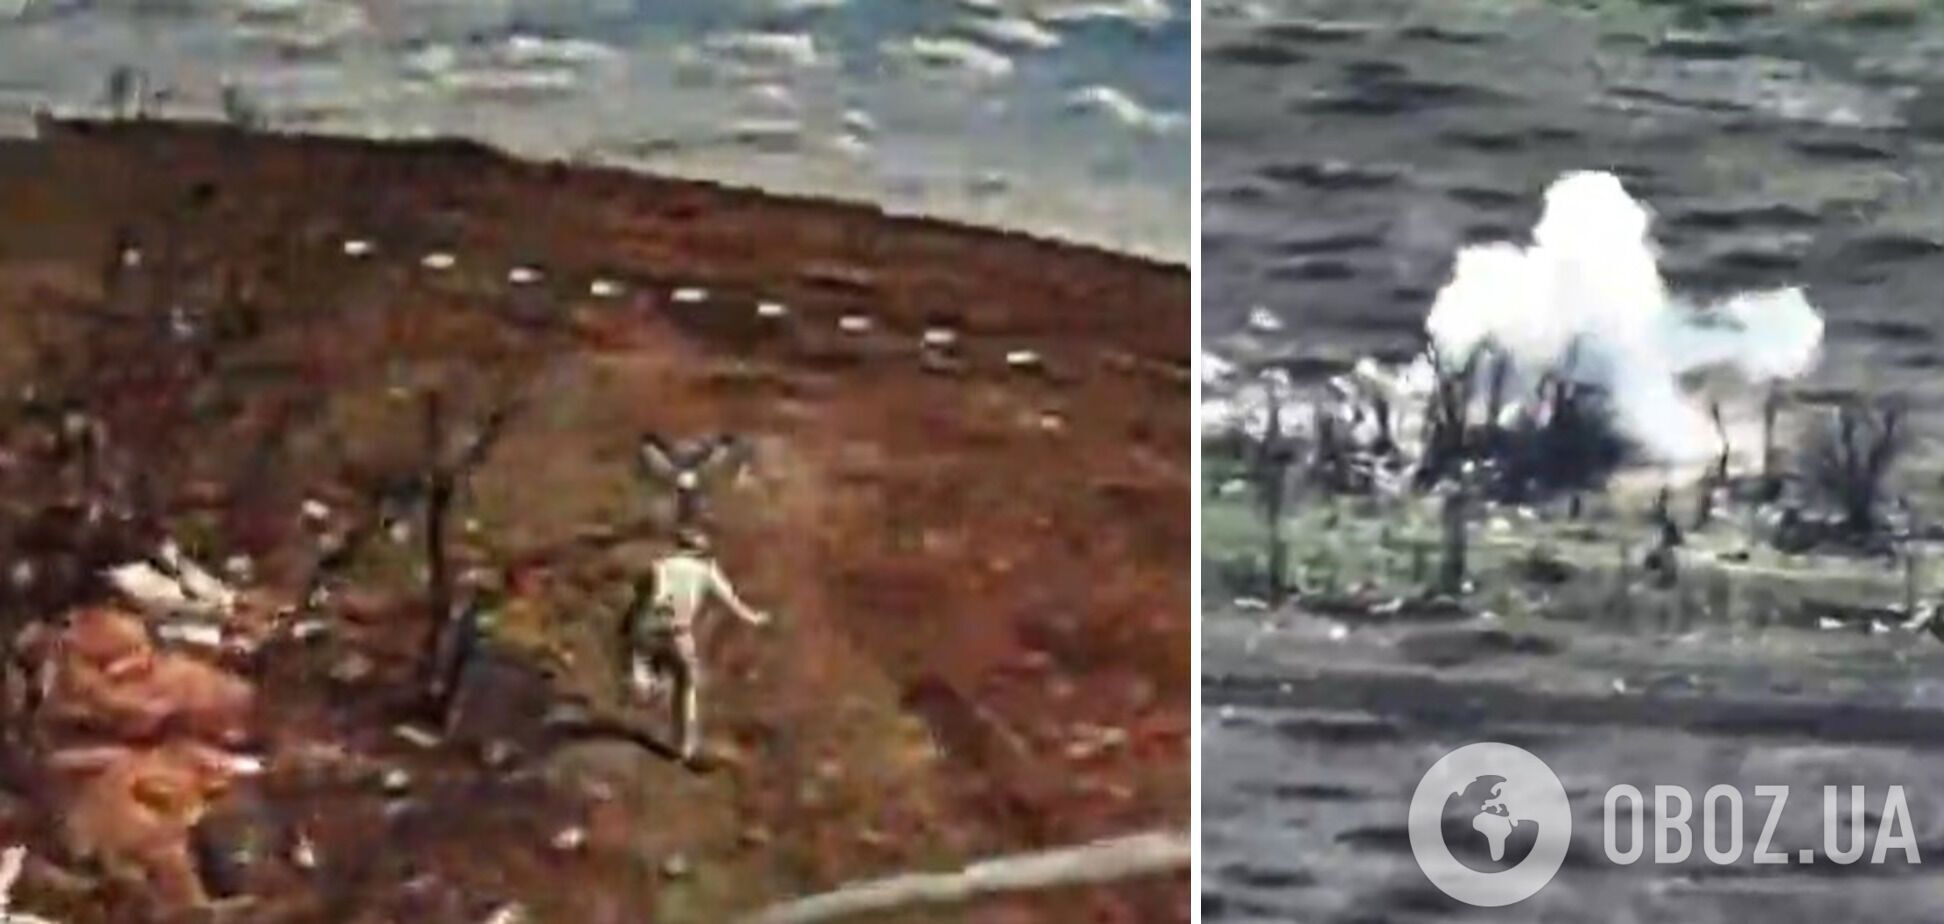 "Убегать от украинского дрона – плохая идея": оккупант пытался спастись бегством, но план провалился. Видео